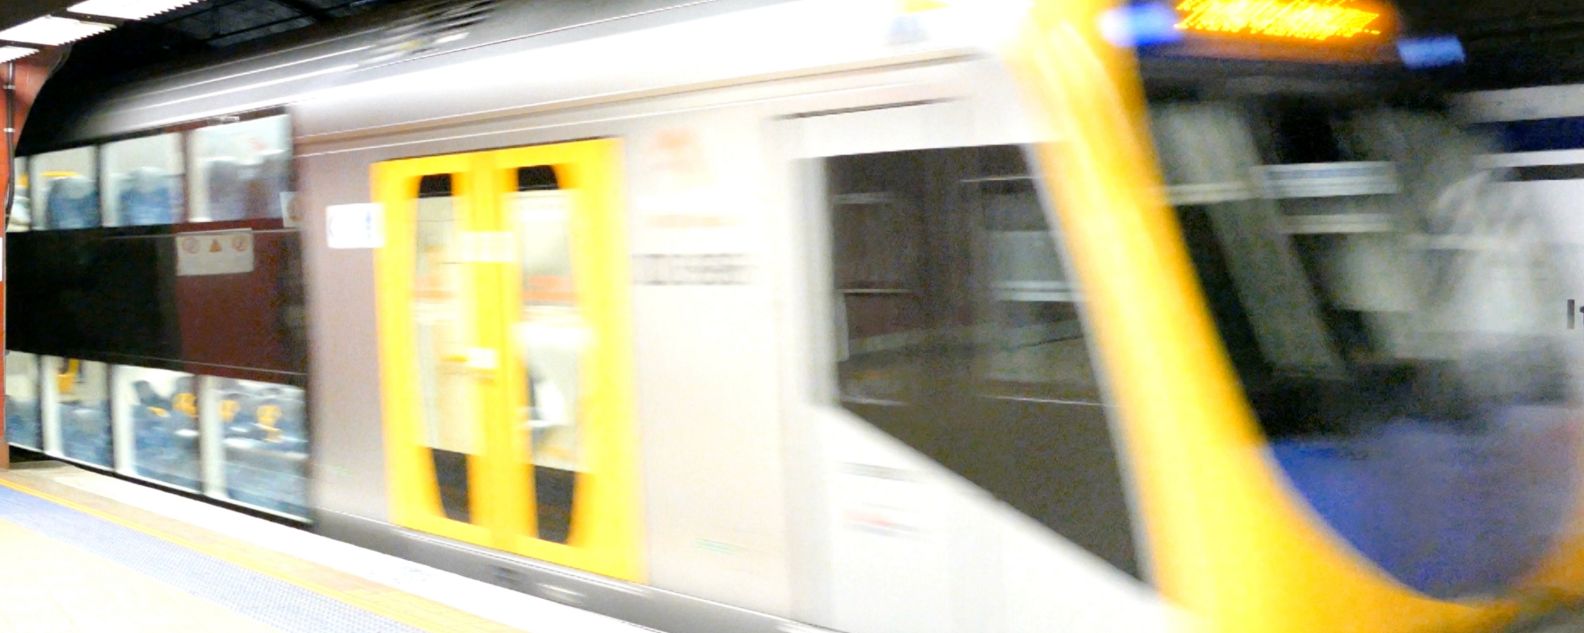 地下のレール上を移動している地下鉄車両の画像